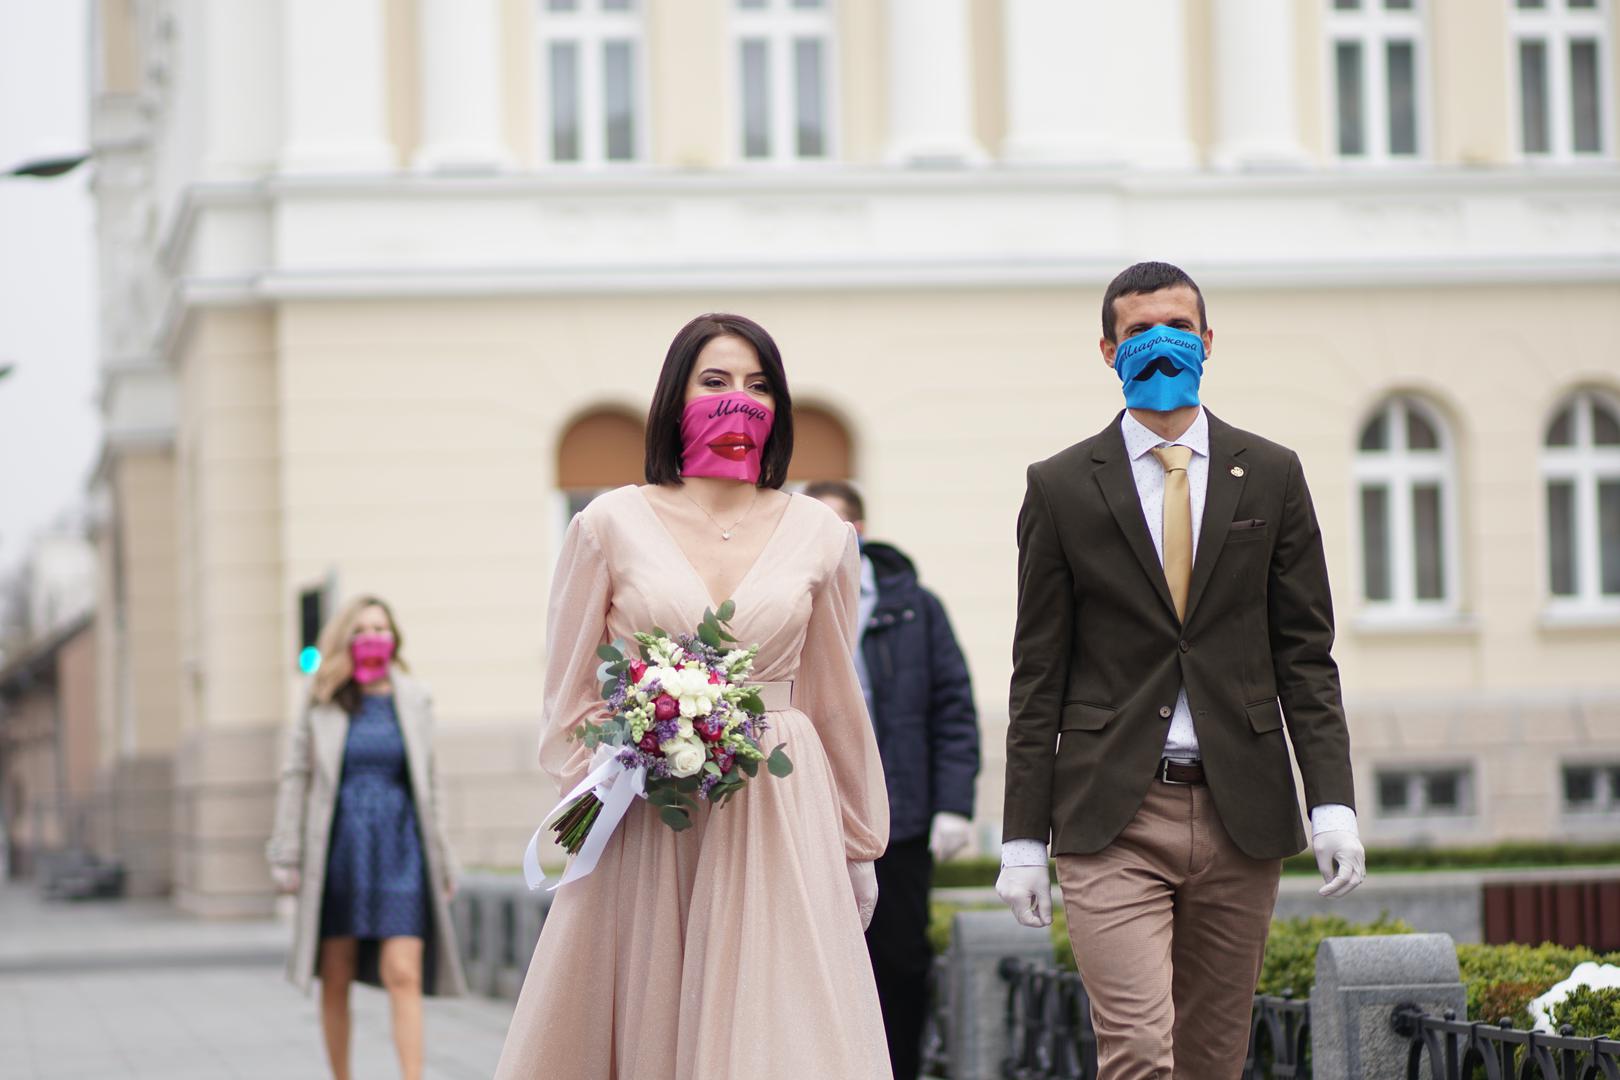 27.03.2020.,Banja Luka, BIH - Odrzano je jedino vjencanje koje nije otkazano u Banja Luci. Vjencanju je bio  prisutan minimalan broj ljudi, a uzvanici su nosili  posebne brendirane maske za lice. 
Photo: Dejan Rakita/PIXSELL